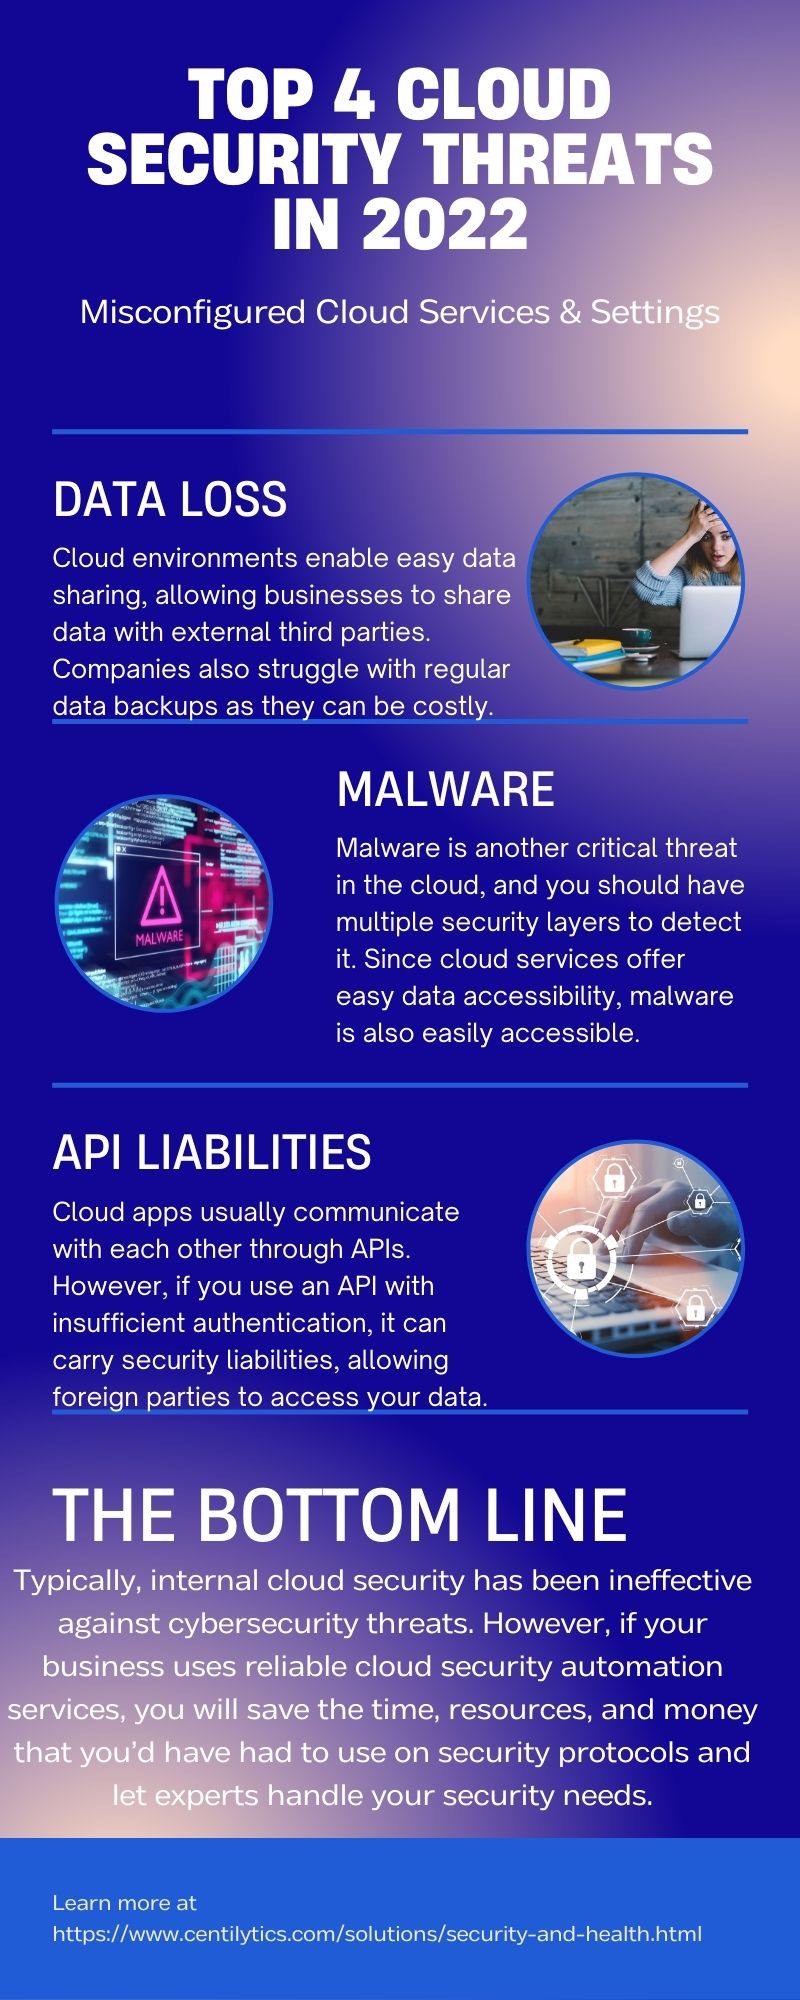 Top 4 Cloud Security Threats in 2022